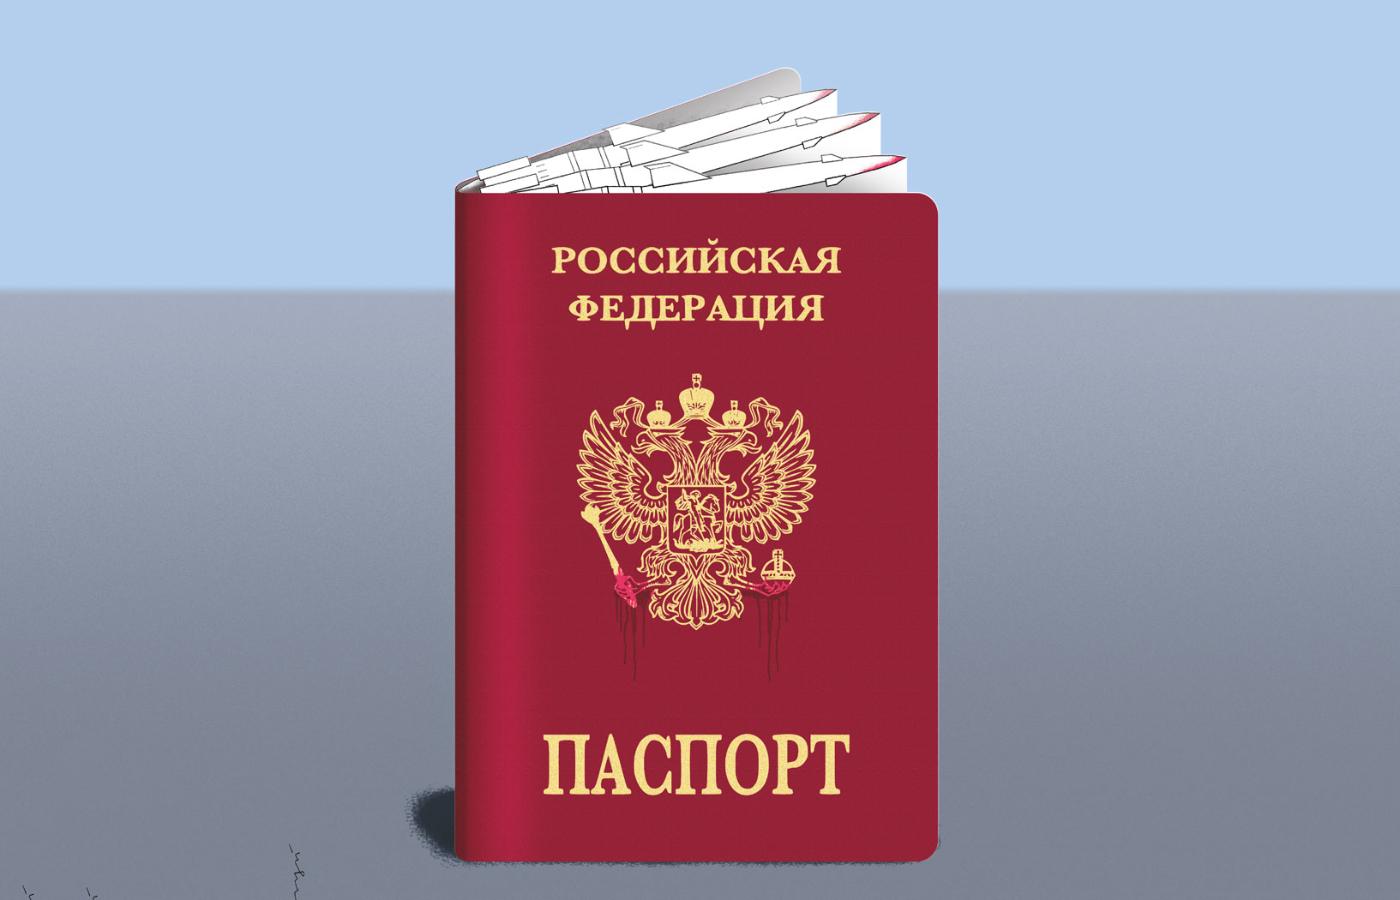 Od 2019 r. w Donbasie rosyjski paszport dostało ok. 800 tys. osób, czyli co piąty mieszkaniec.